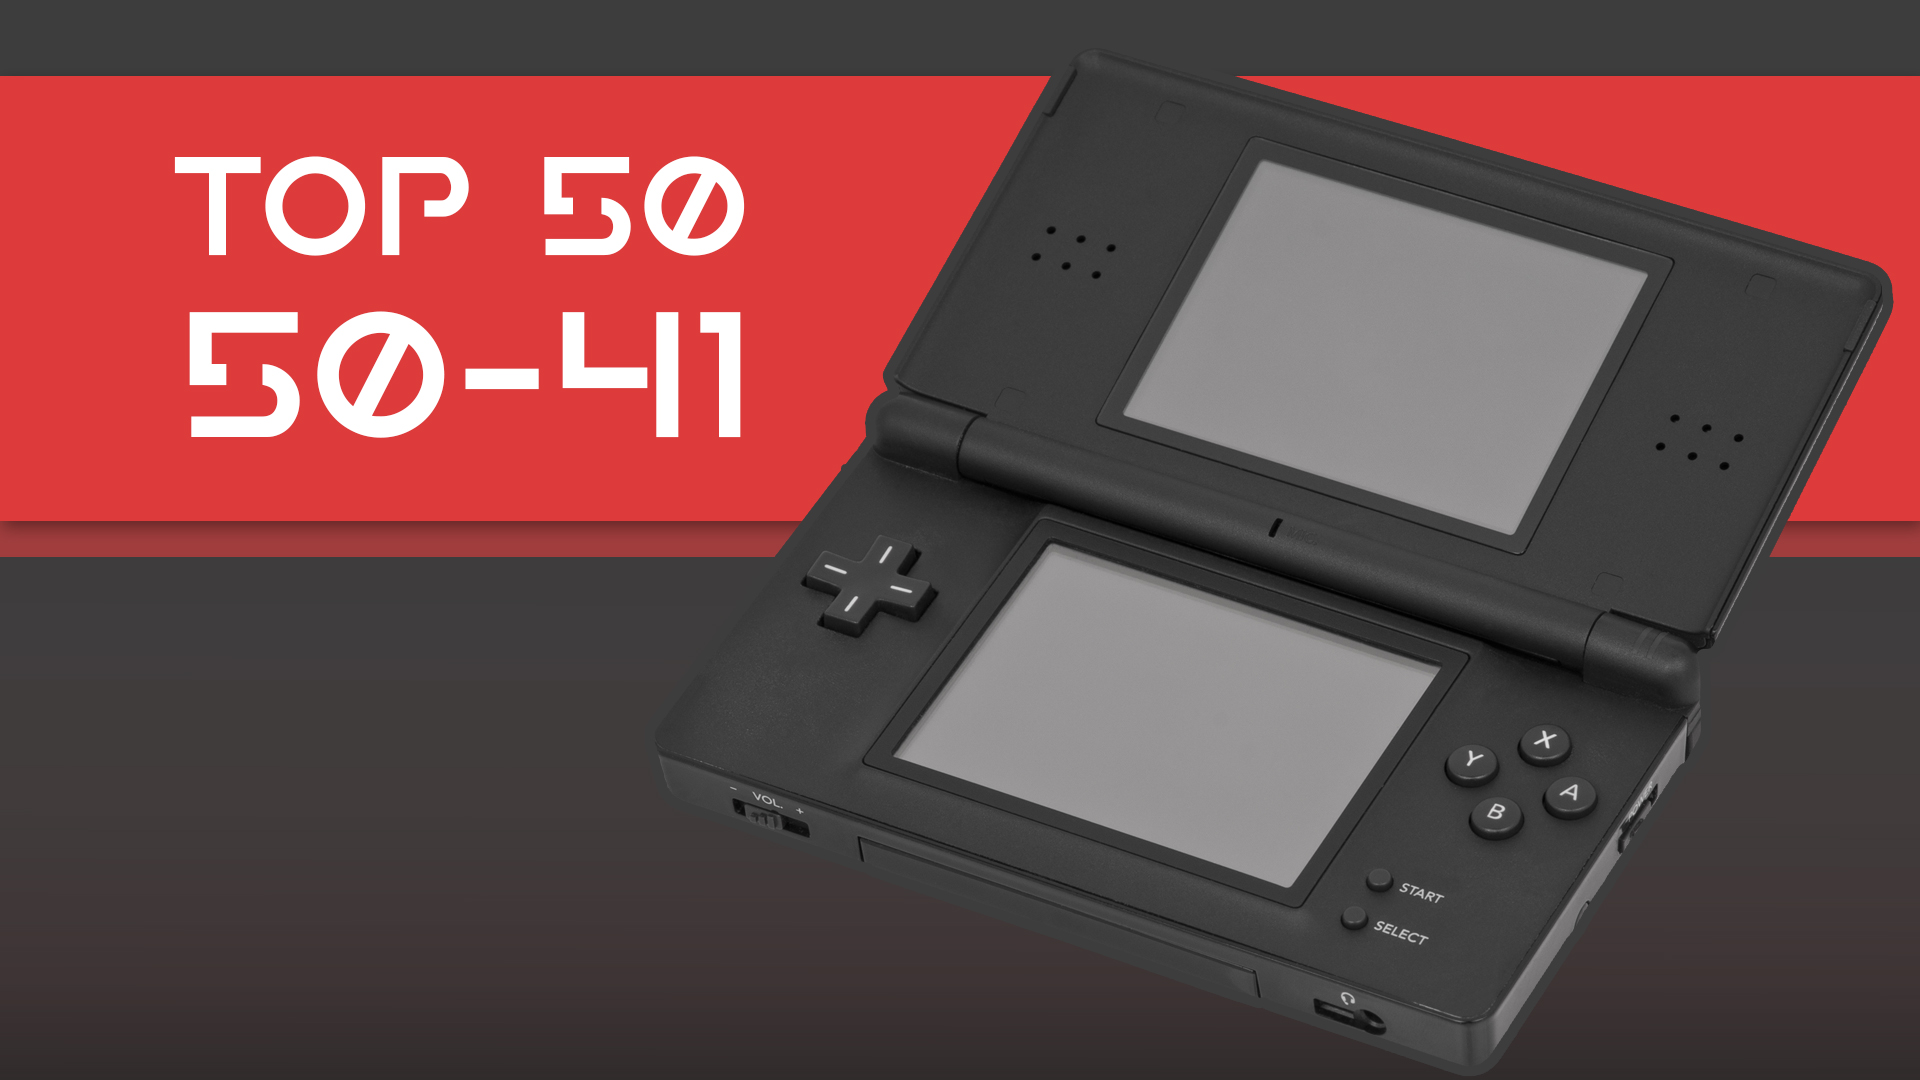 É possível jogar títulos para a Nintendo DS na Nintendo 3DS